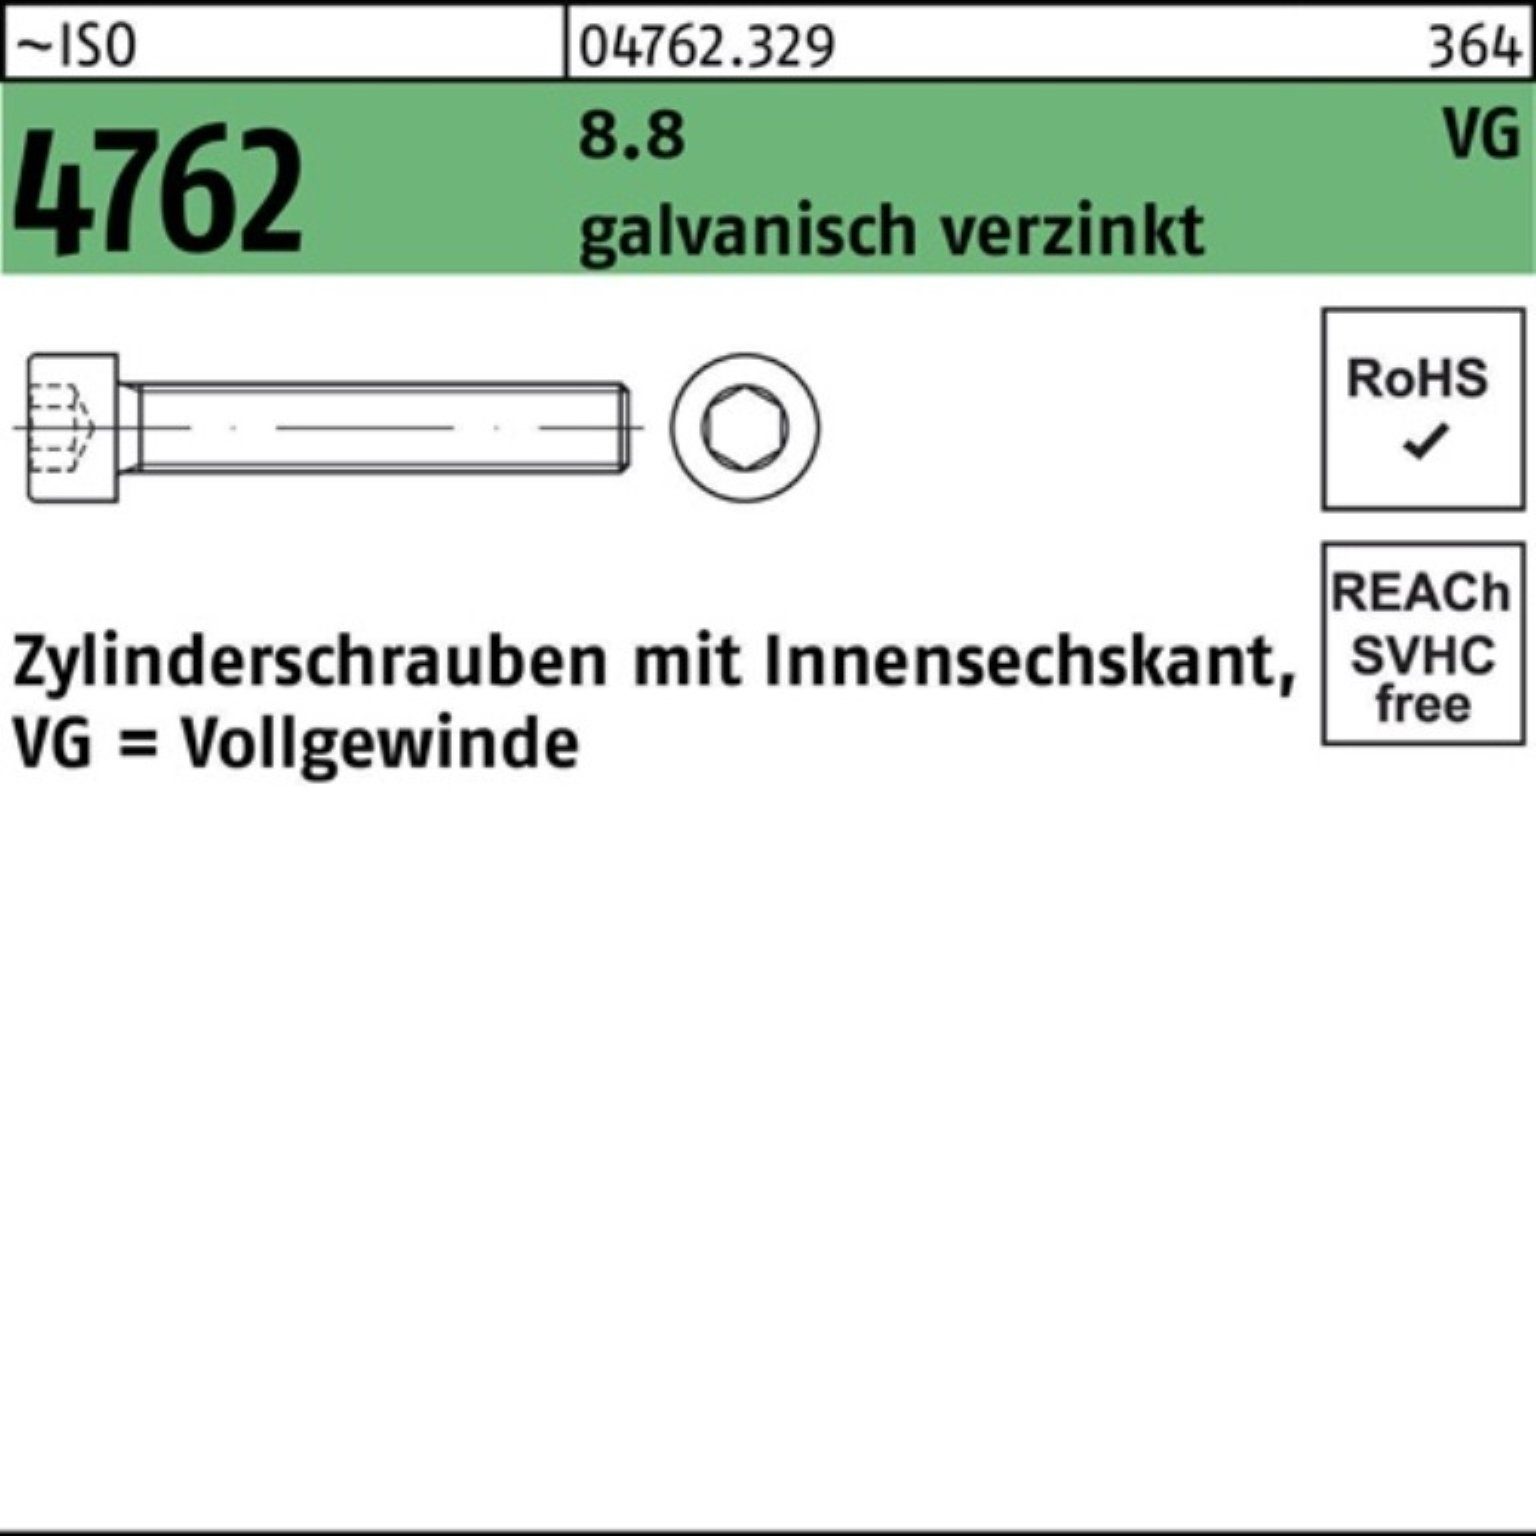 Innen-6kt Zylinderschraube ISO 8.8 100er VG M10x50 Zylinderschraube galv.verz Reyher 4762 Pack